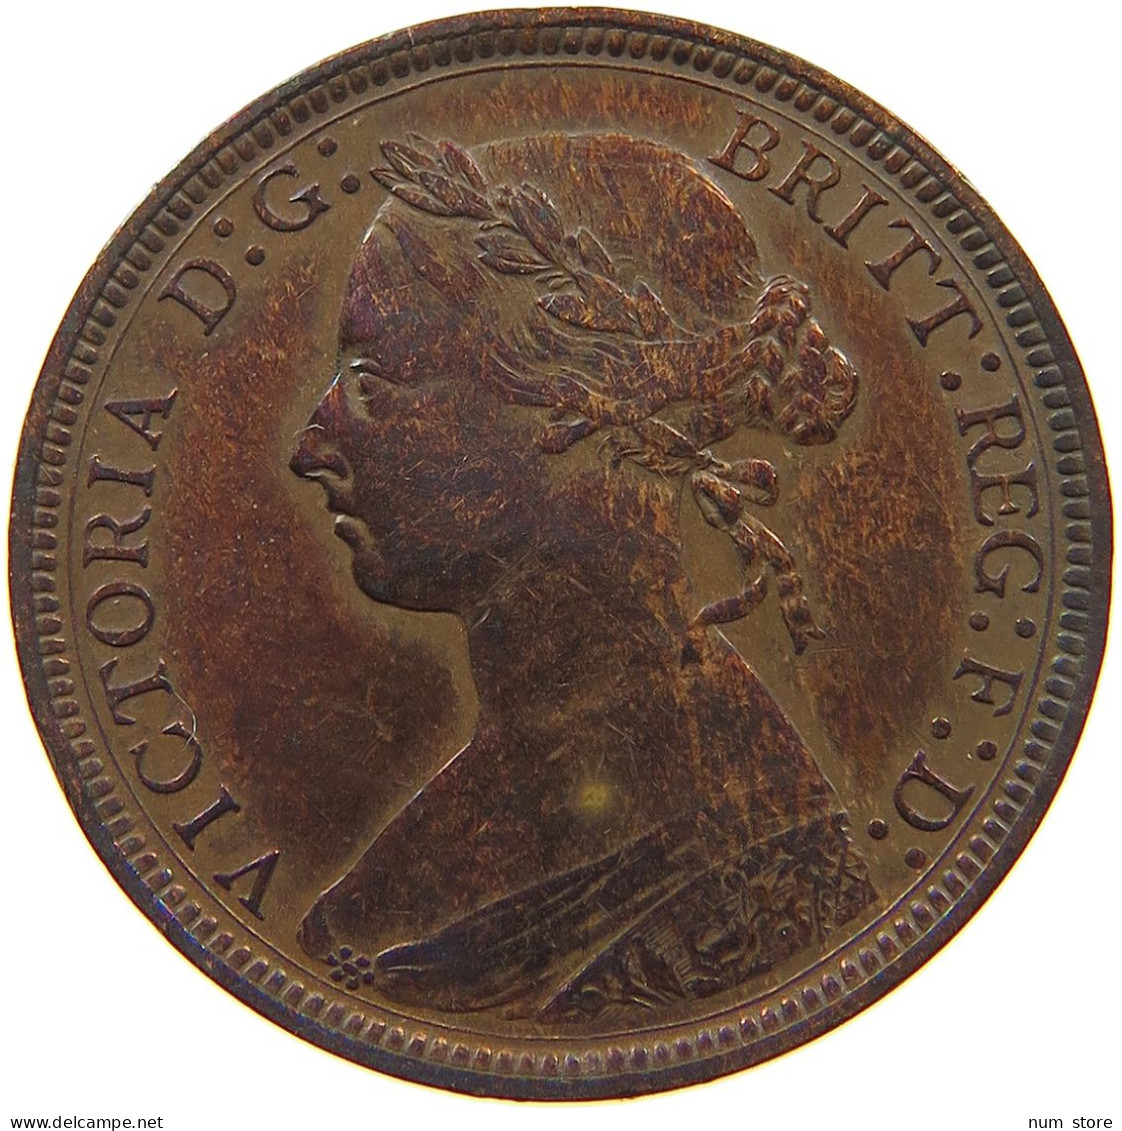 GREAT BRITAIN HALF PENNY 1885 Victoria 1837-1901 #t107 0061 - C. 1/2 Penny